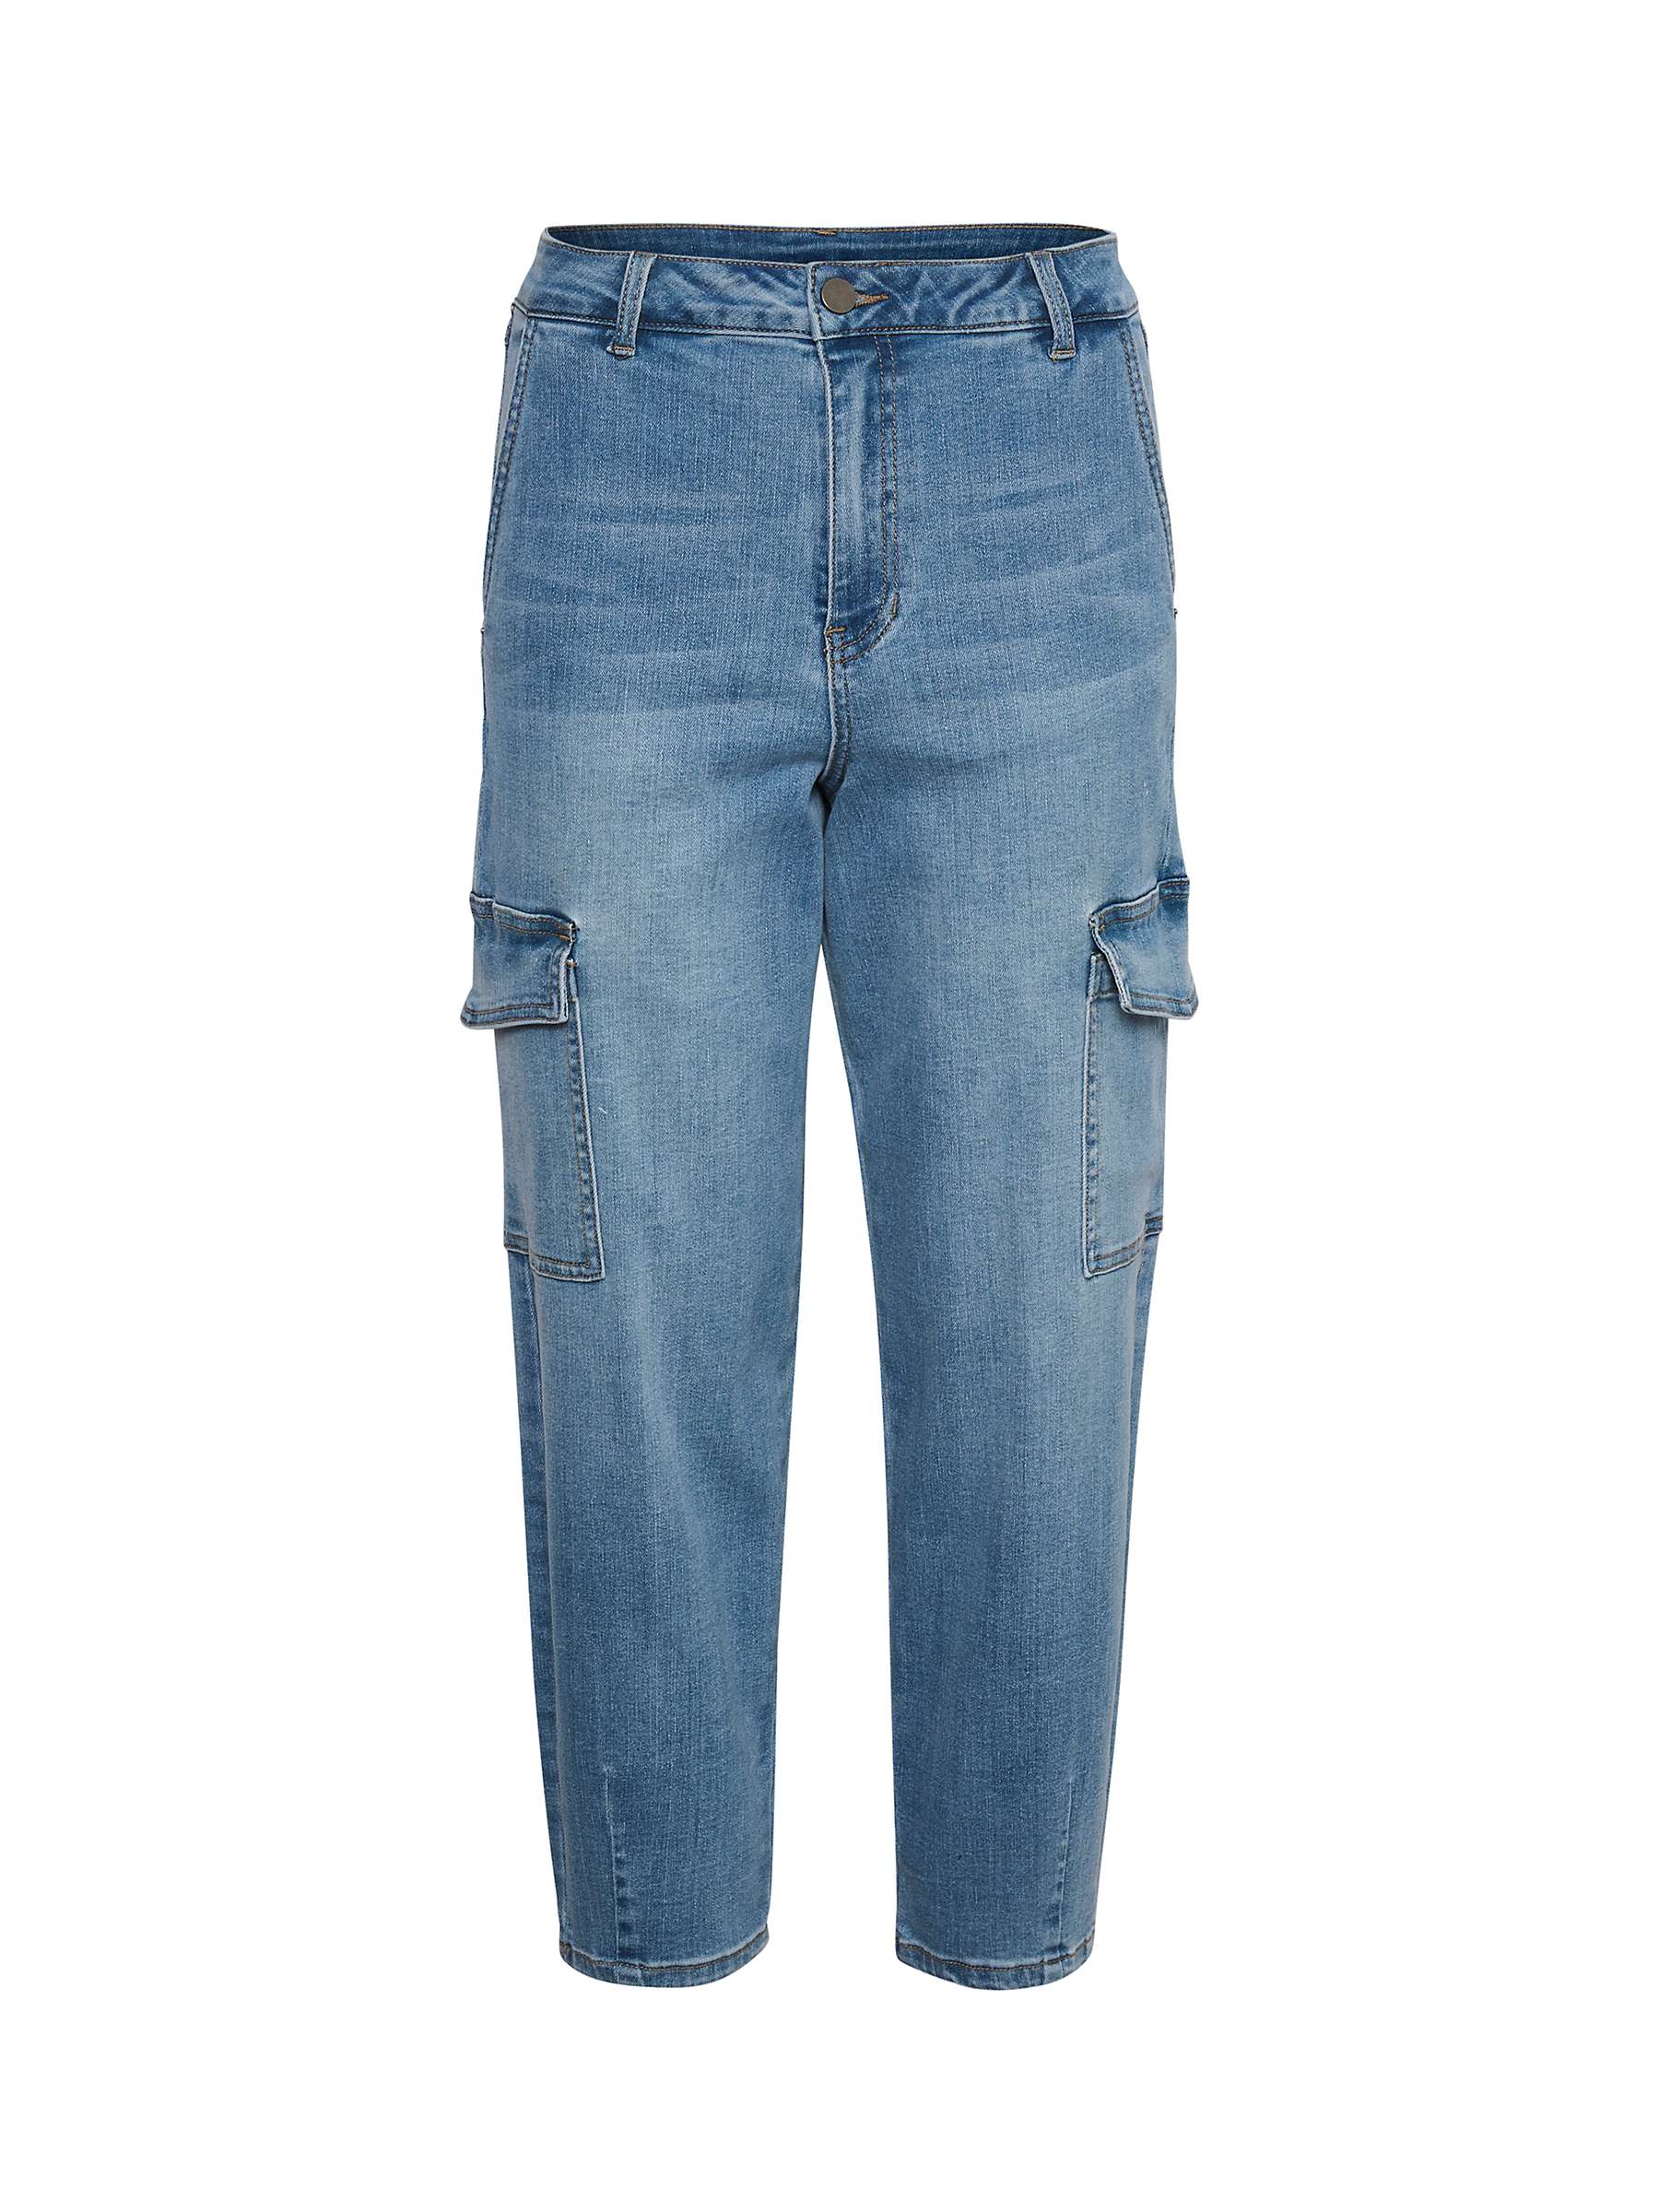 Buy KAFFE Sinem Barrel 7/8 Jeans, Blue Online at johnlewis.com